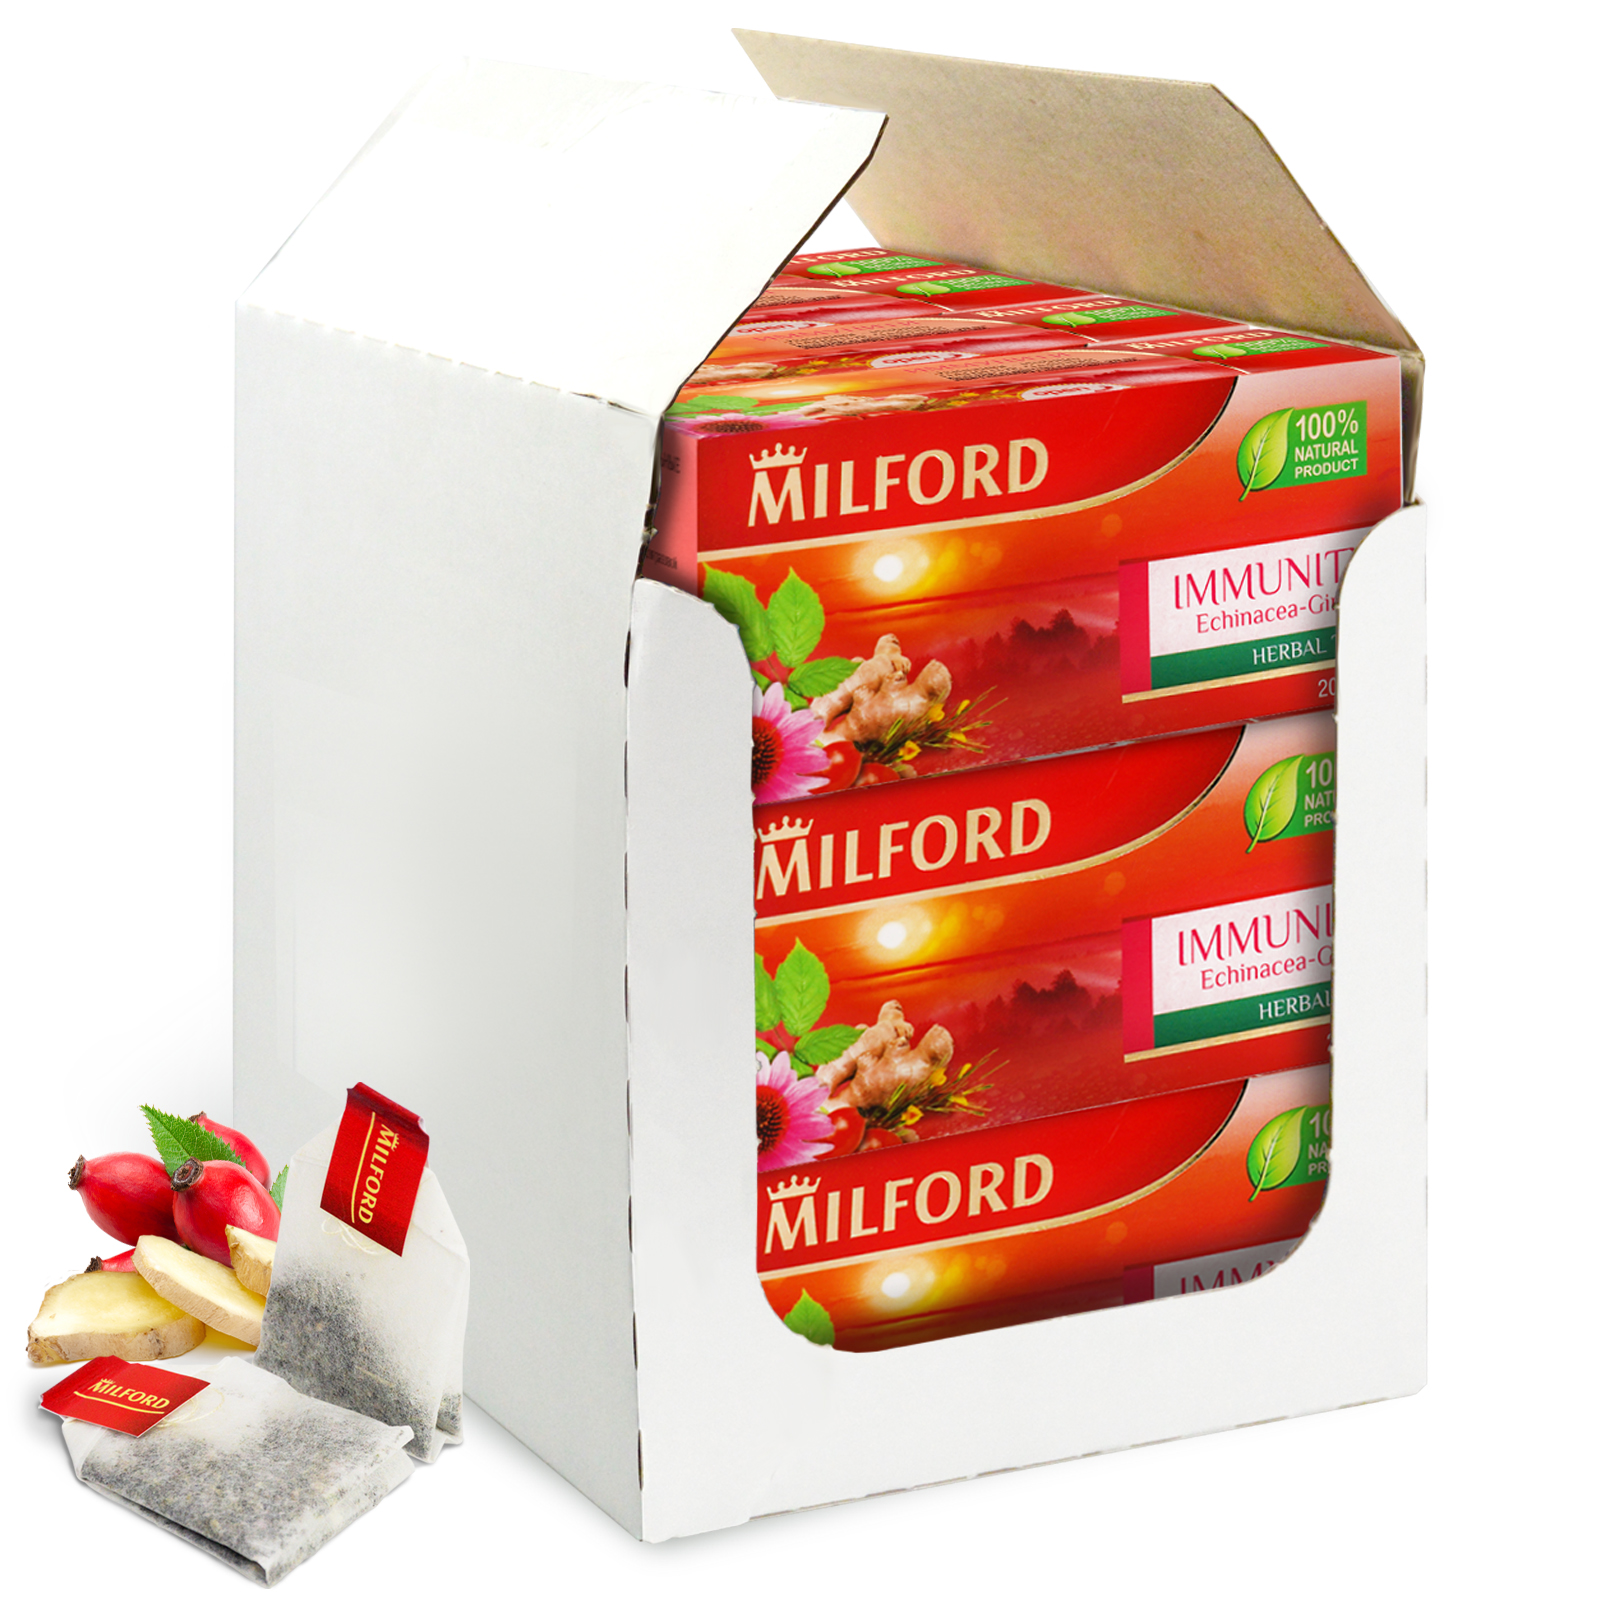 Чай в пакетиках Milford Иммунити эхинацея - имбирь, 12 пачек по 20 пакетиков